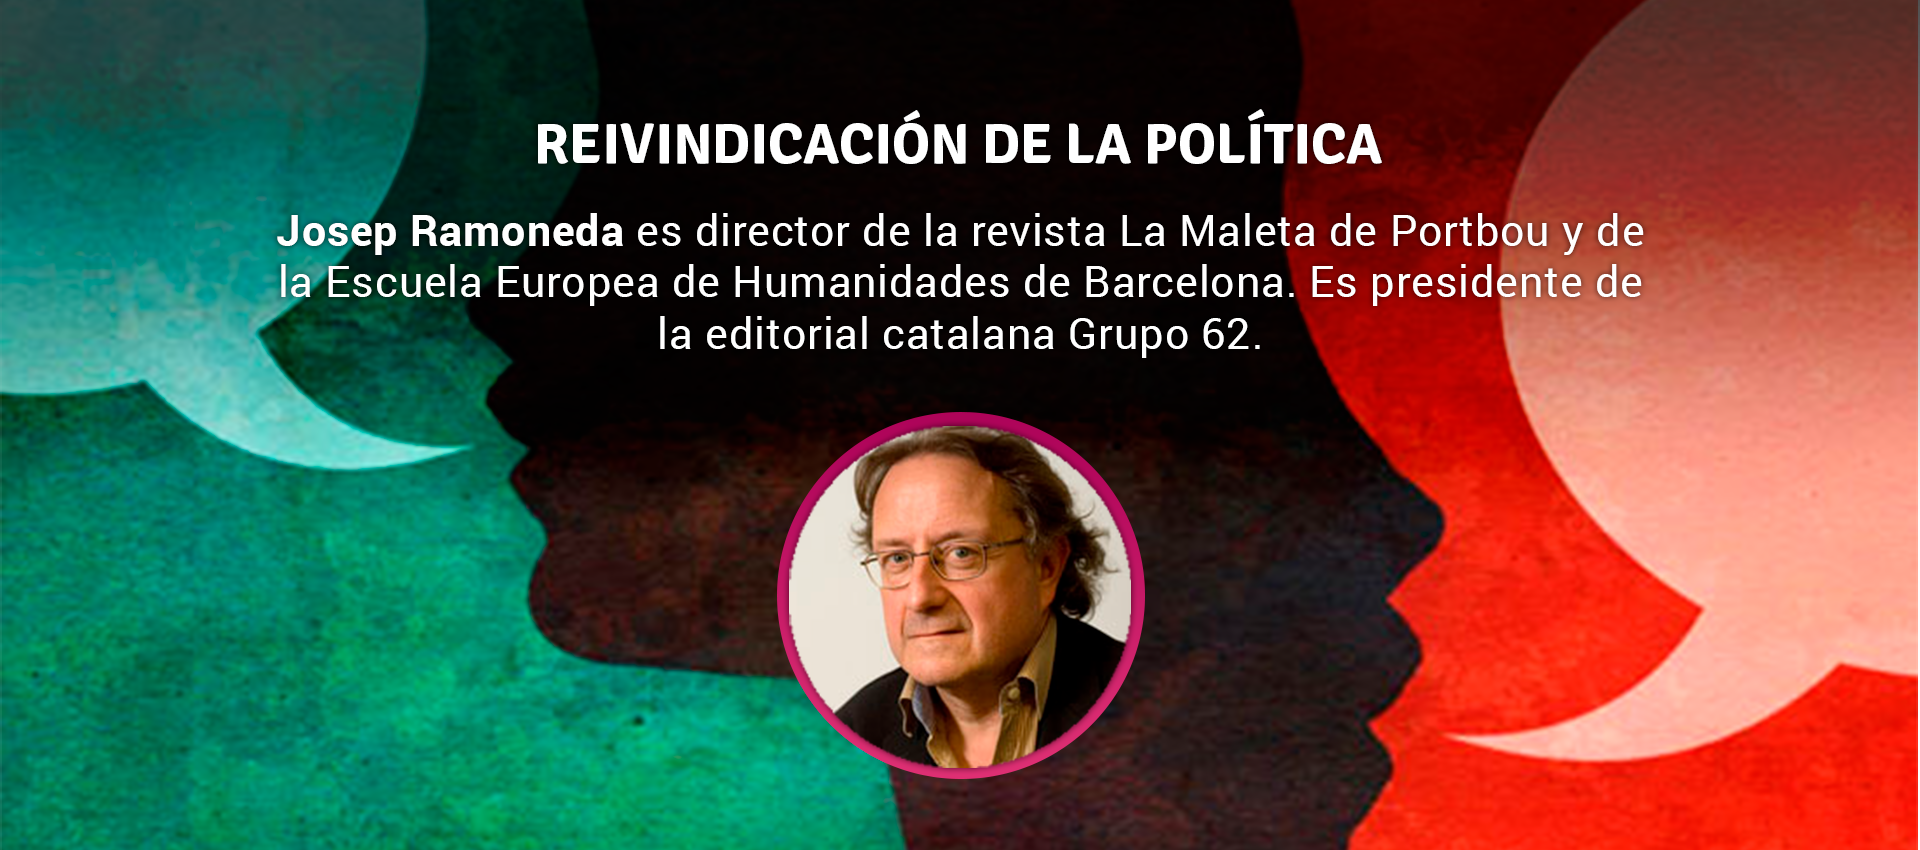 Josep Ramoneda - REIVINDICACIÓN DE LA POLÍTICA